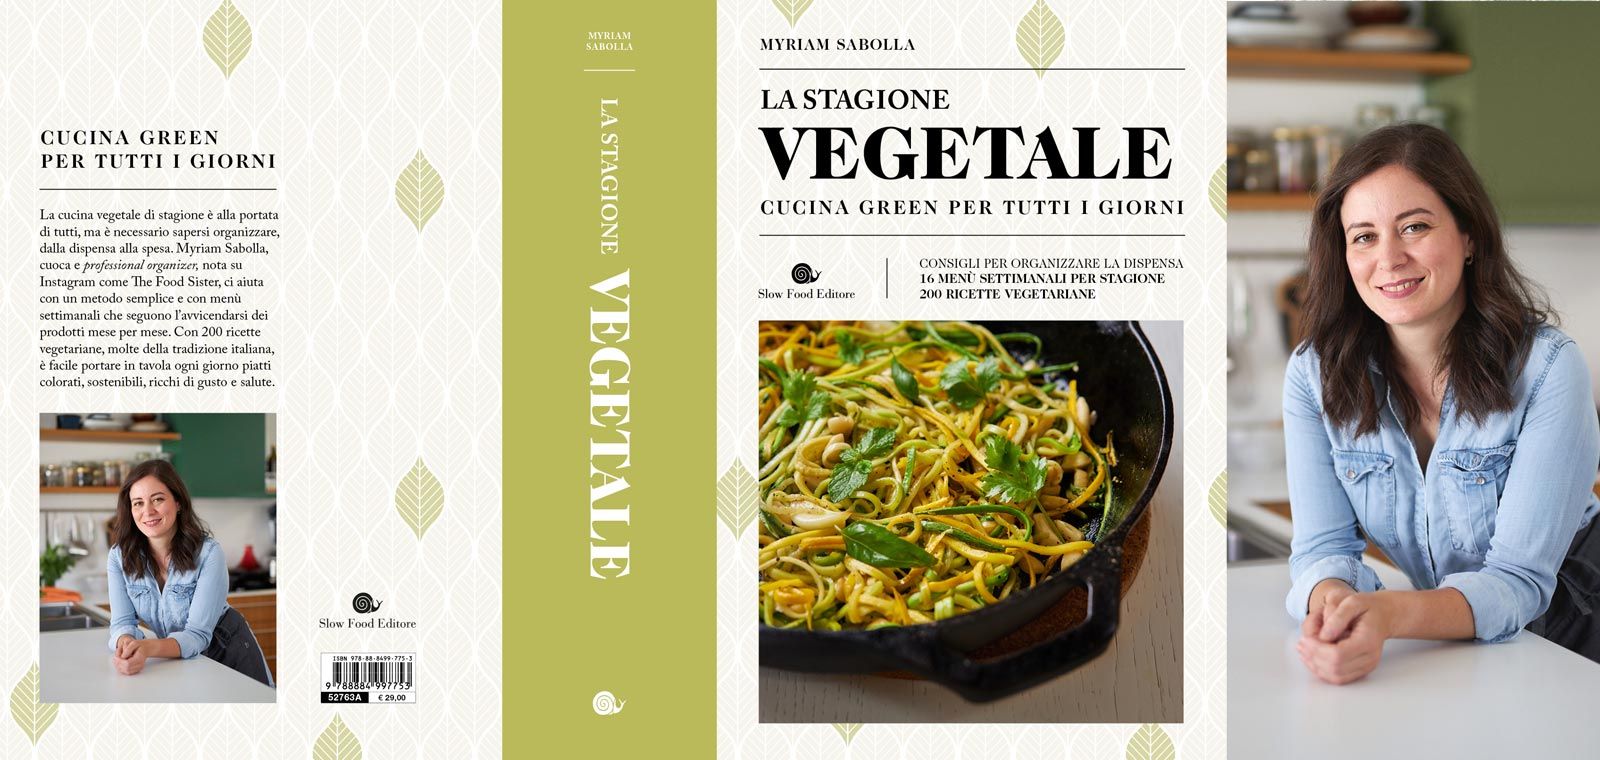 Presentazione del libro “La Stagione Vegetale – Cucina green per tutti i giorni”, di Myriam Sabolla”